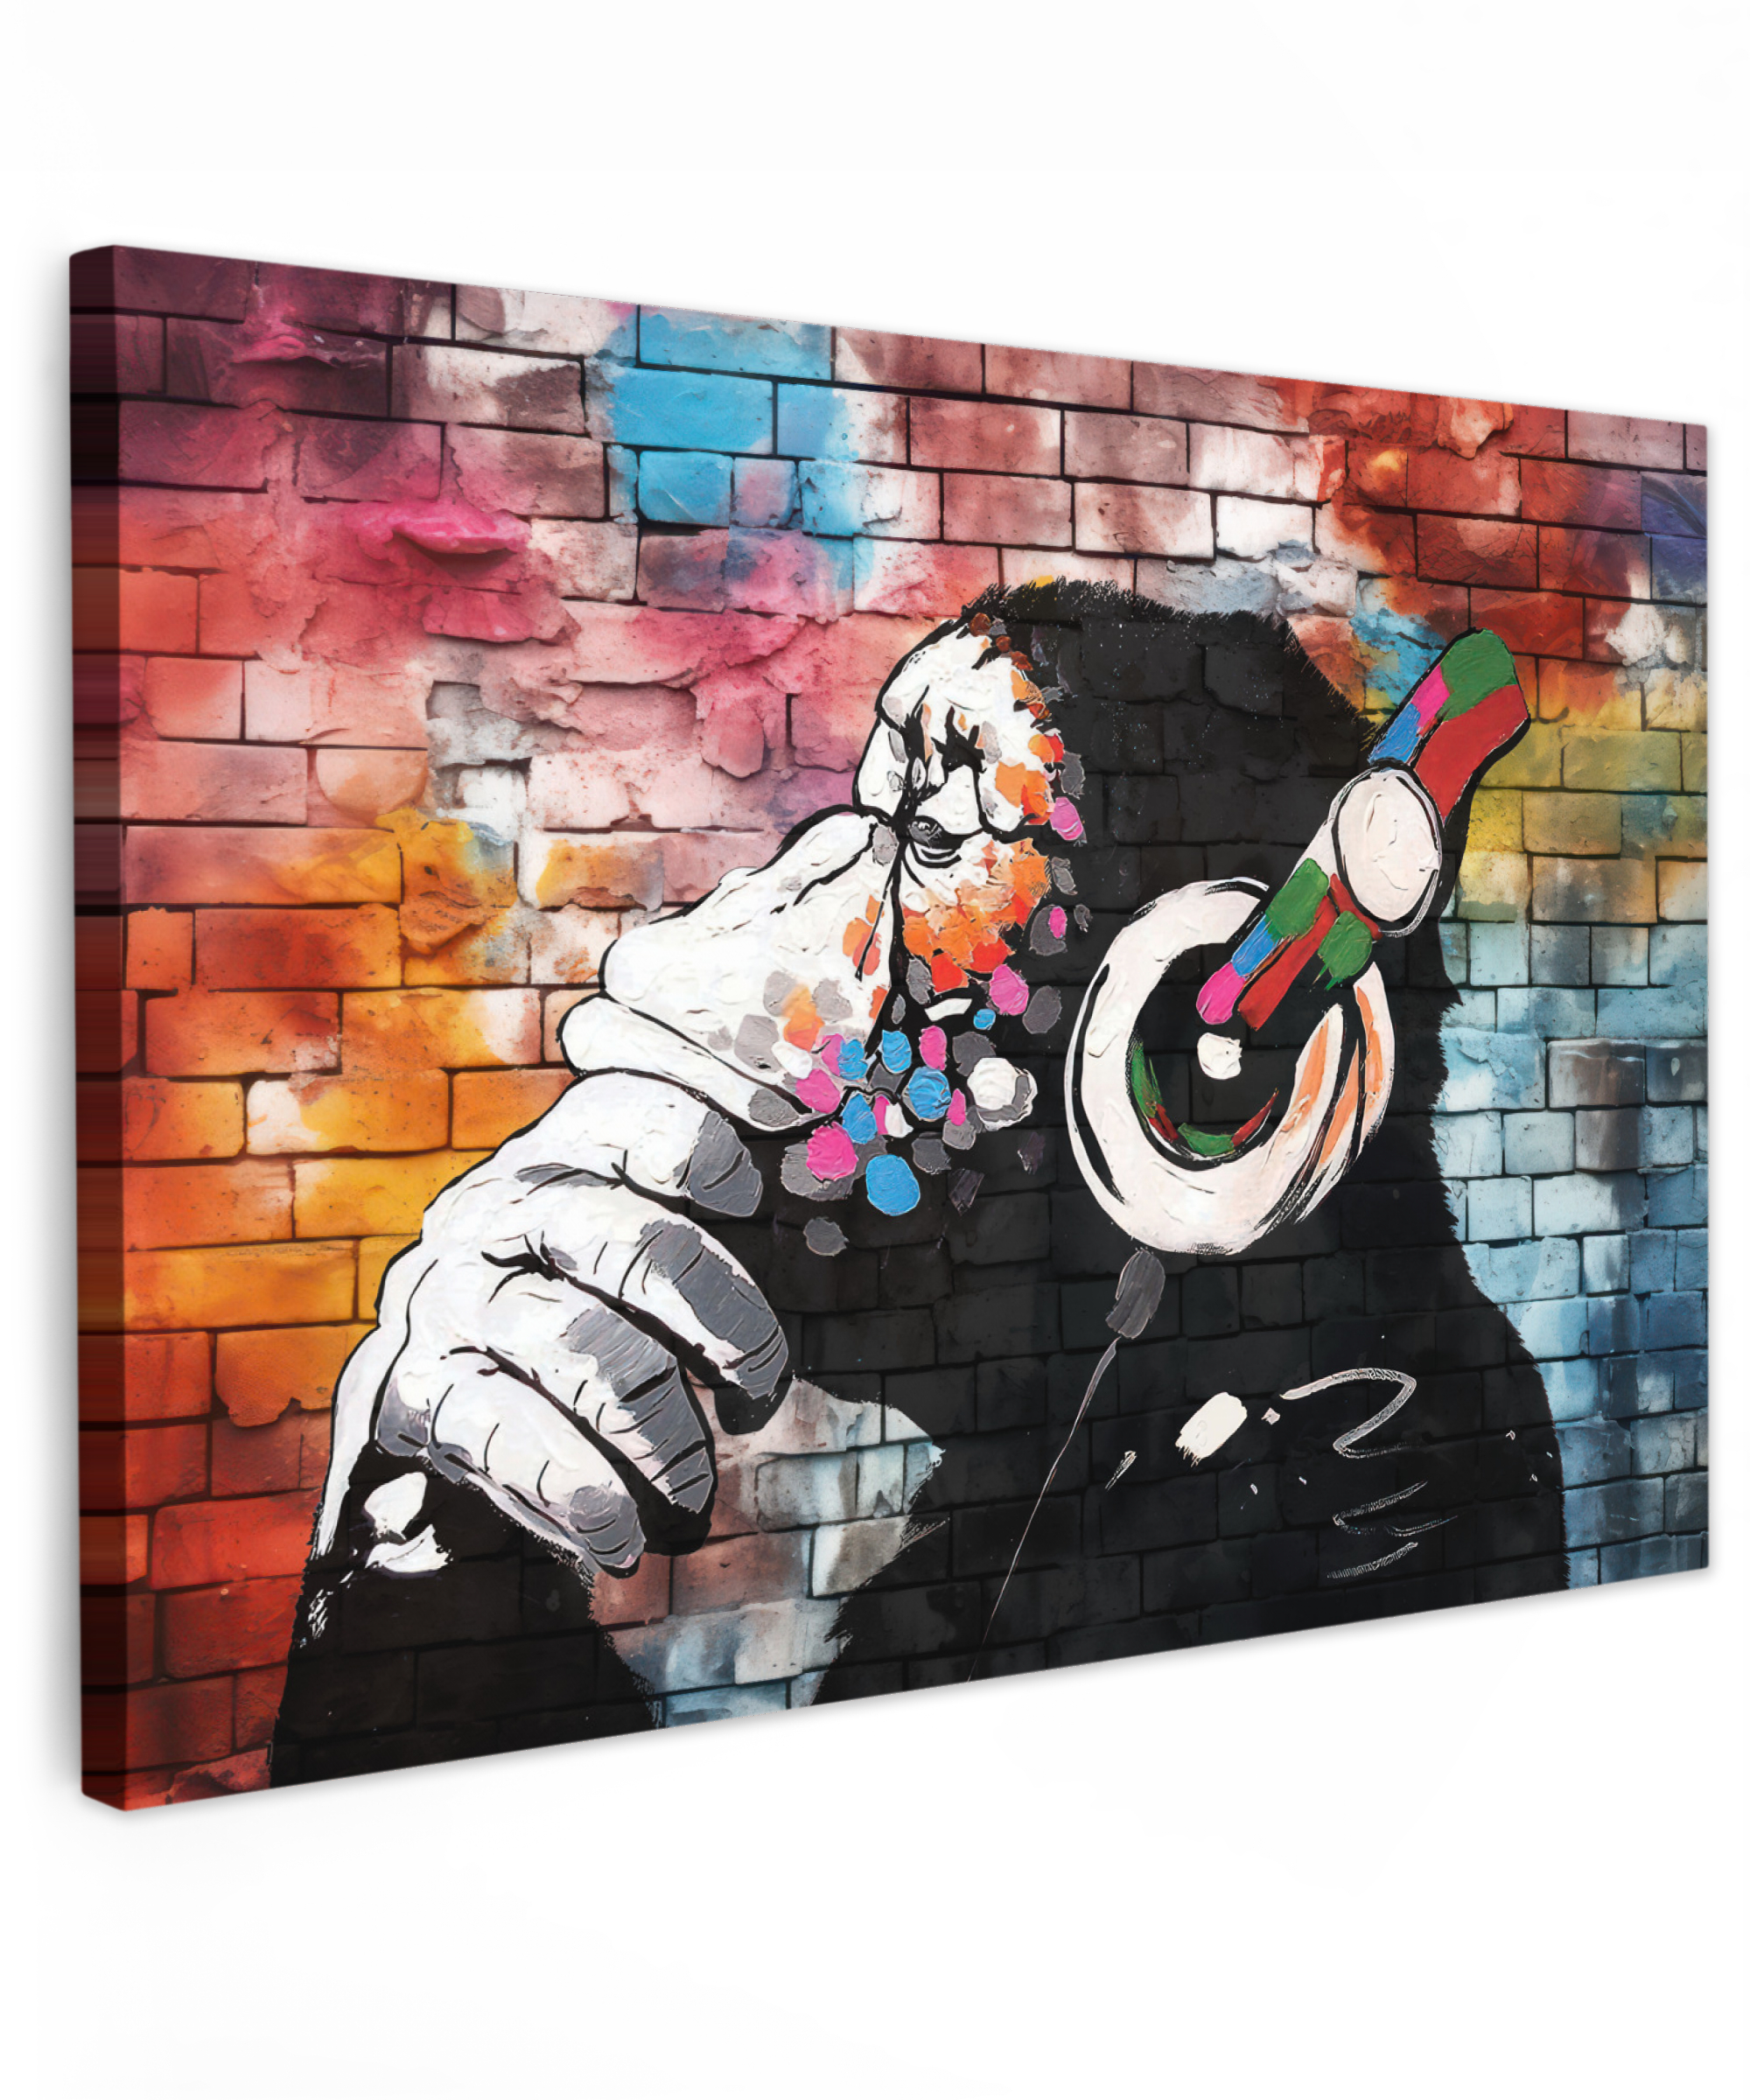 Tableau sur toile - Singe - Graffiti - Musique